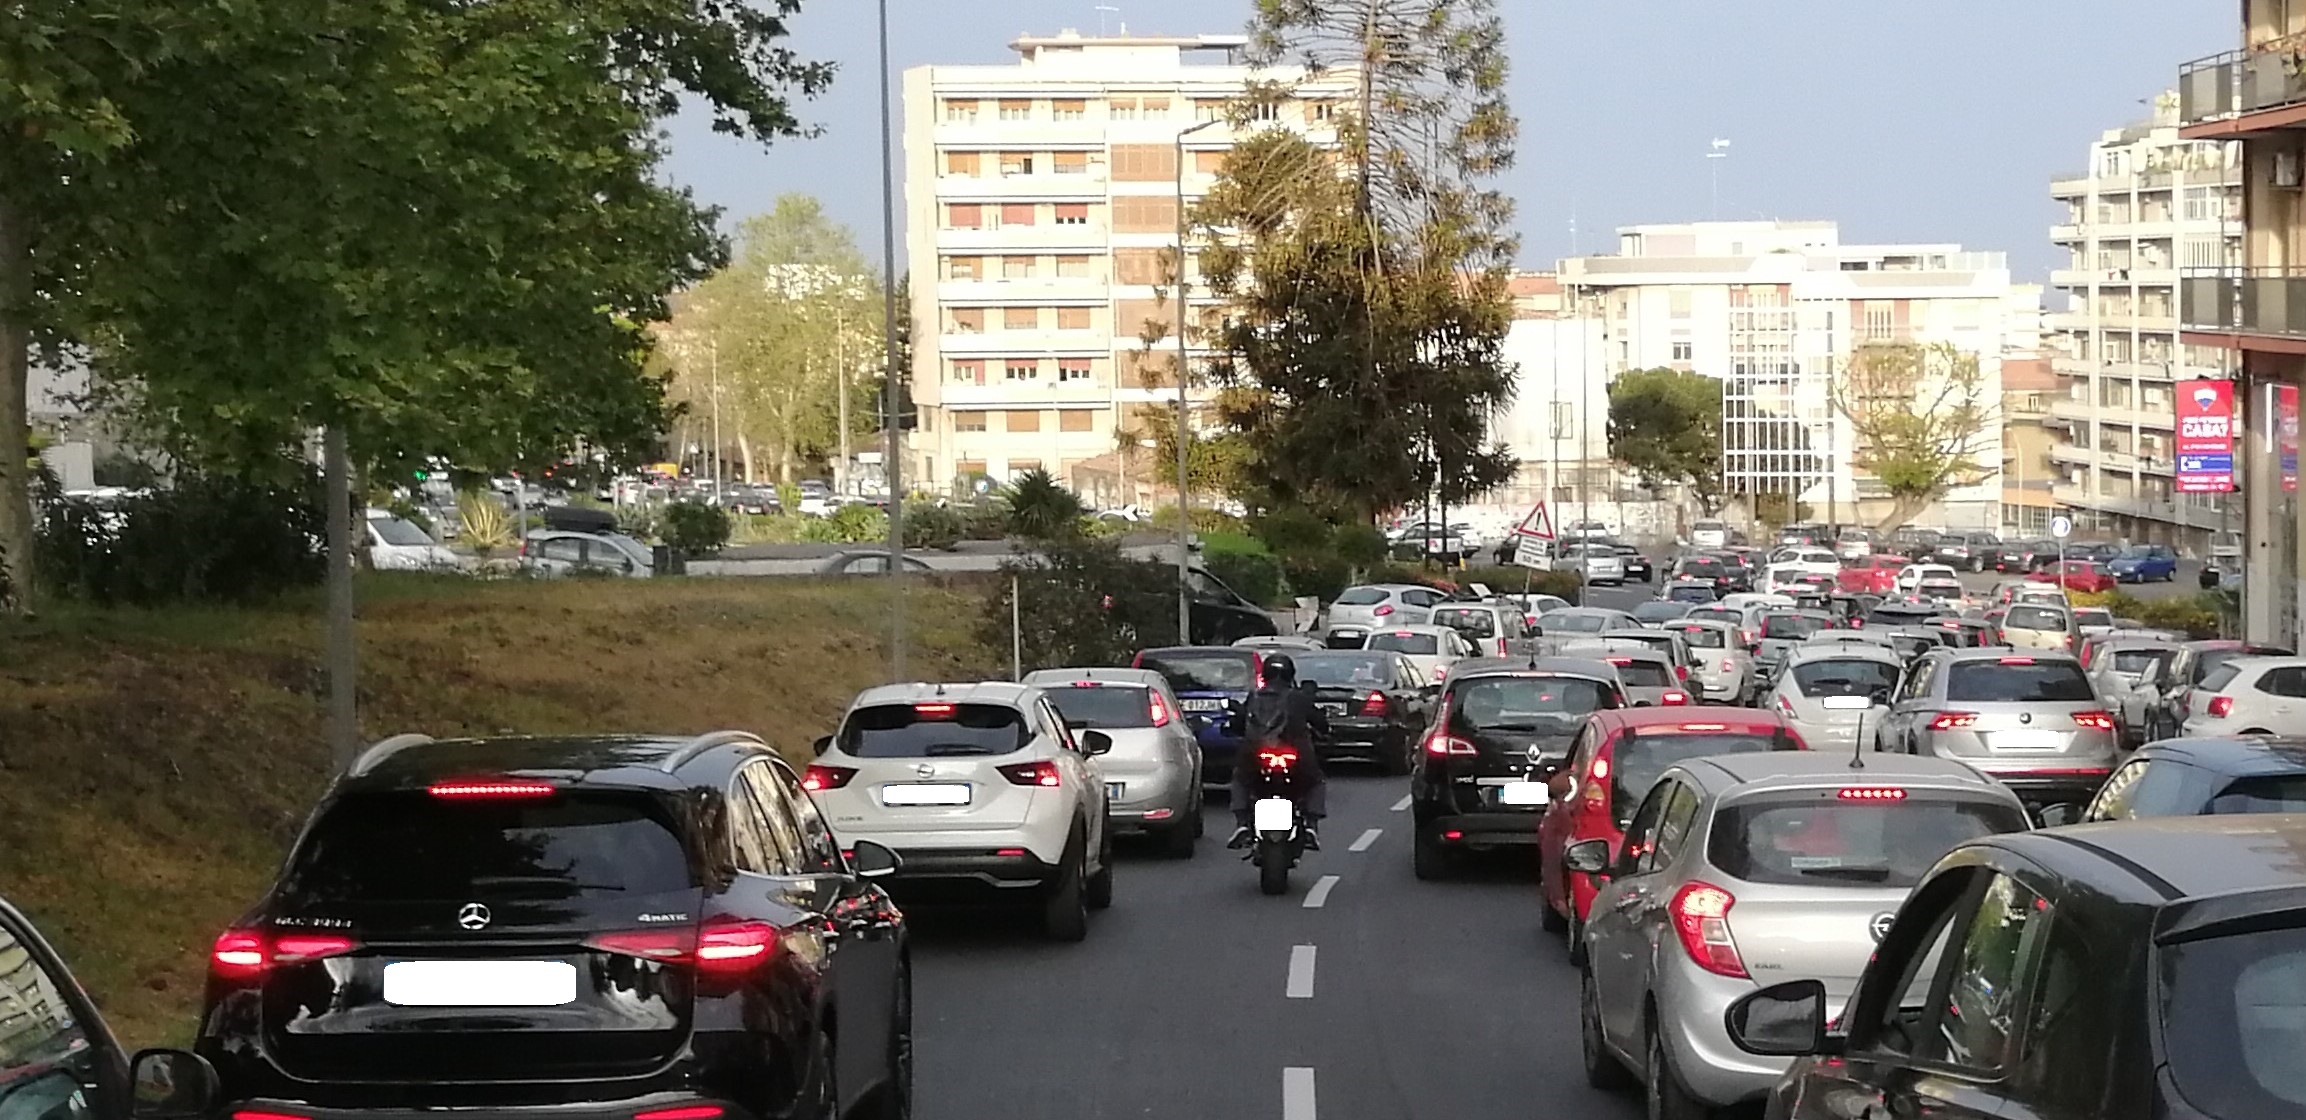 Caos e traffico nelle strade del III municipio di Catania, urge intervento